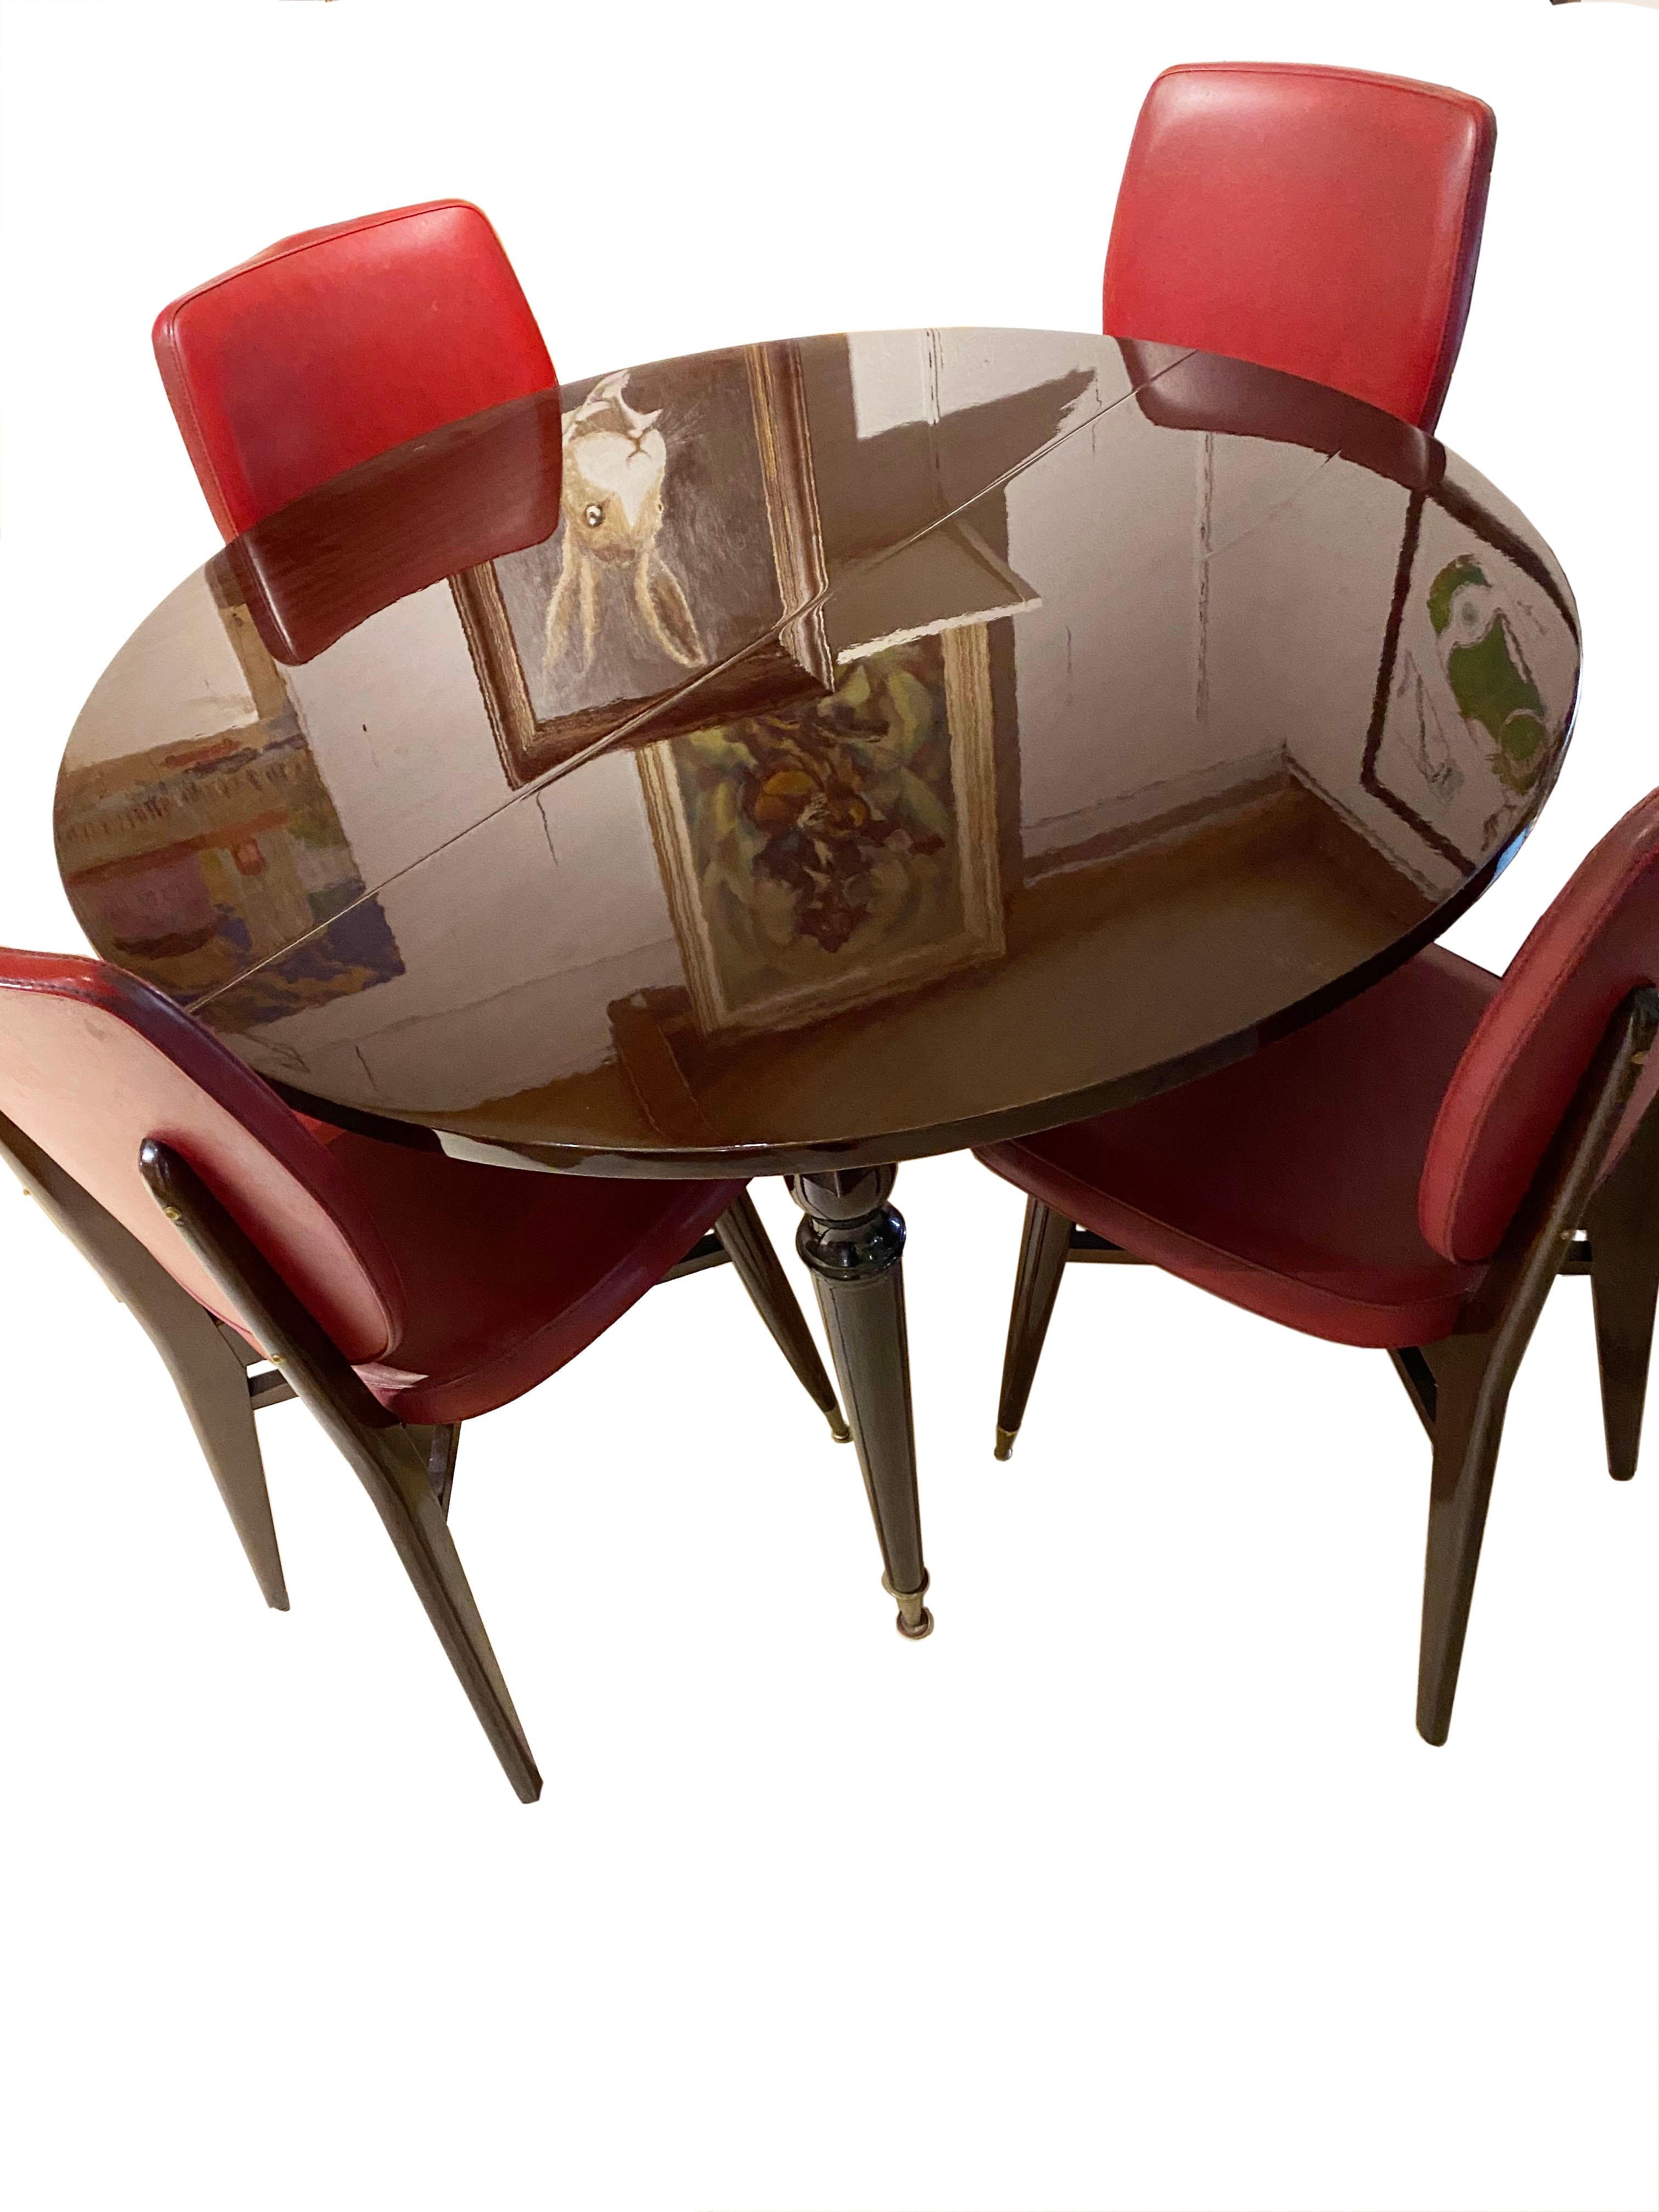 Salle à manger
acajou
table + 2 extensions,
vers 1950
Mesures : 4 pieds de hauteur
110 cm de diamètre
4 chaises (90 x 40 x 40)
890.